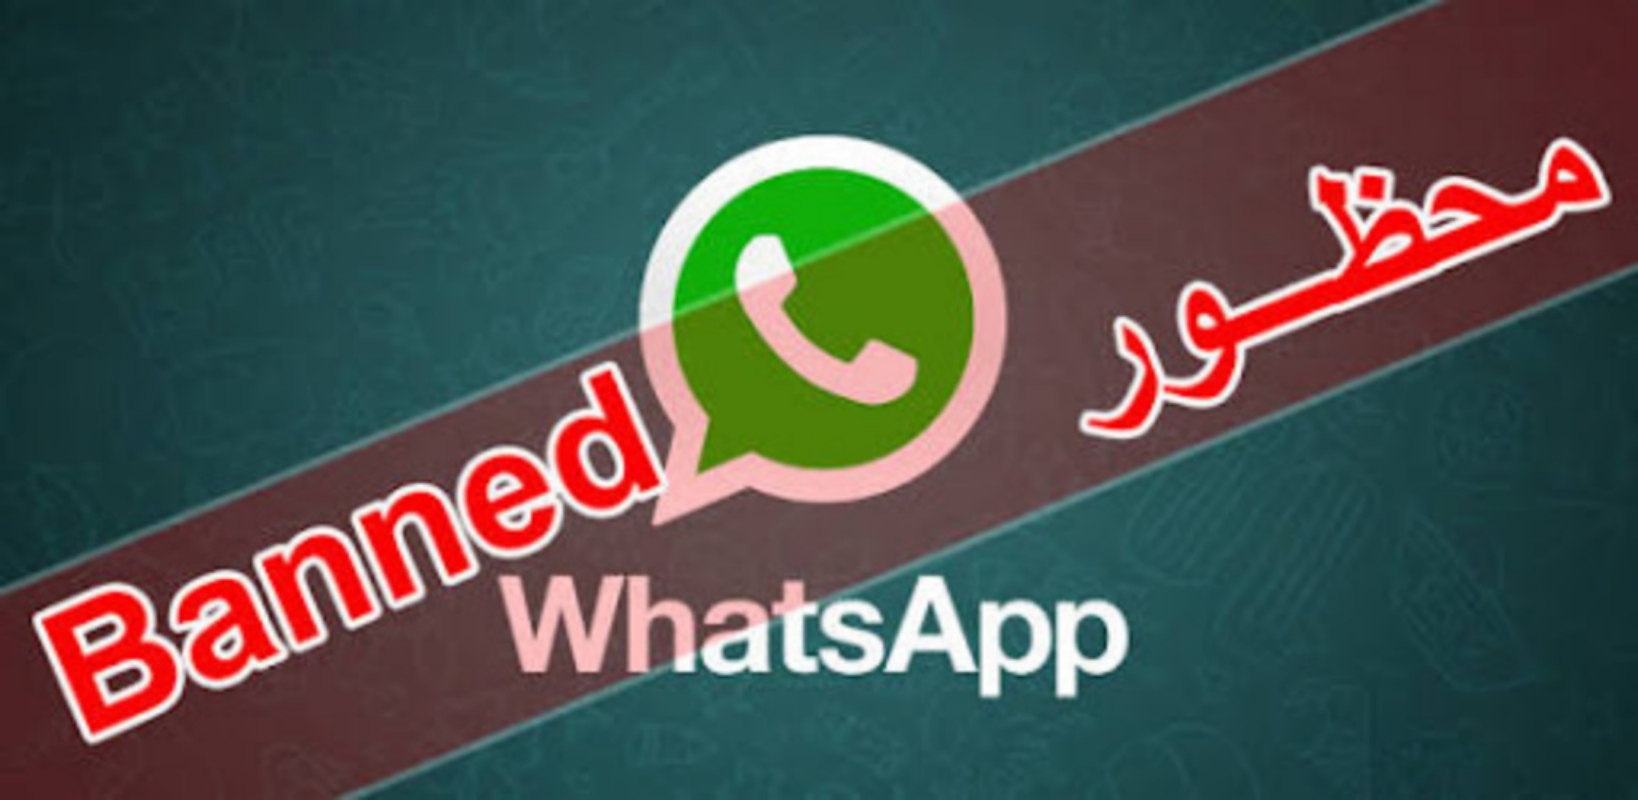 كيف يمكنني إزالة الحظر في واتساب WhatsApp